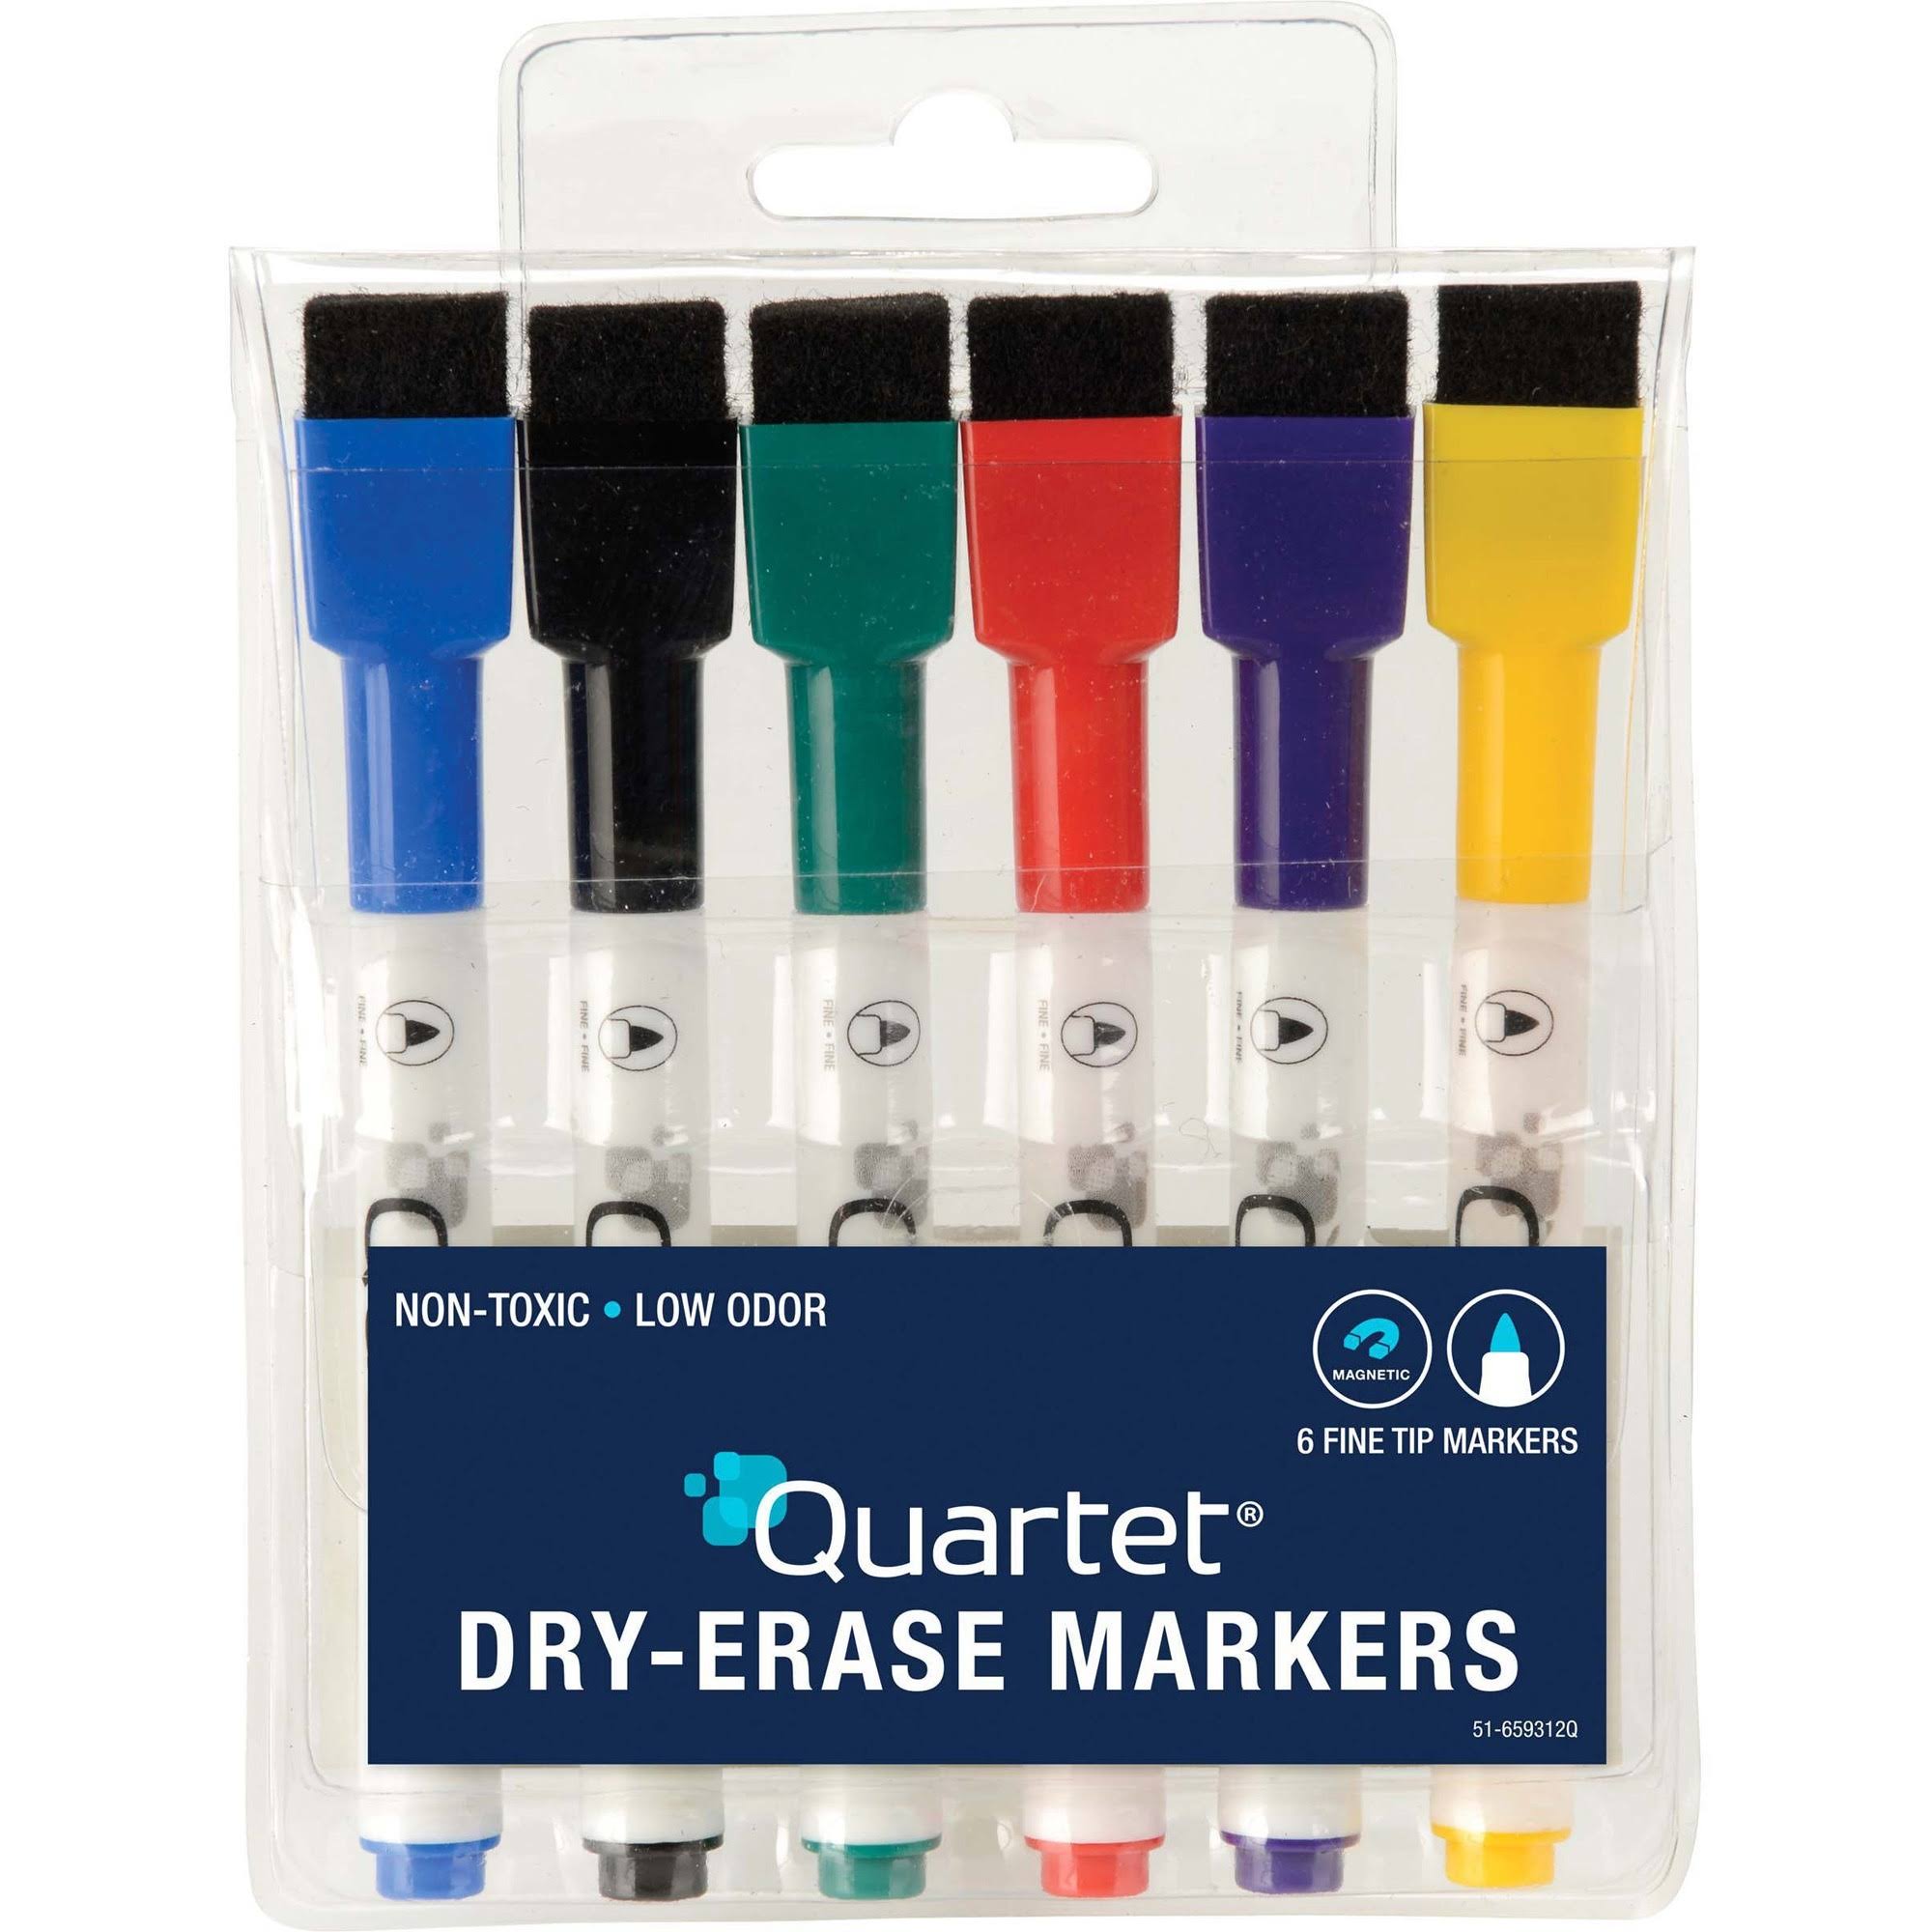 Sharpie Chalk Marker, Wet Erase, White, Medium - 2 chalk markers